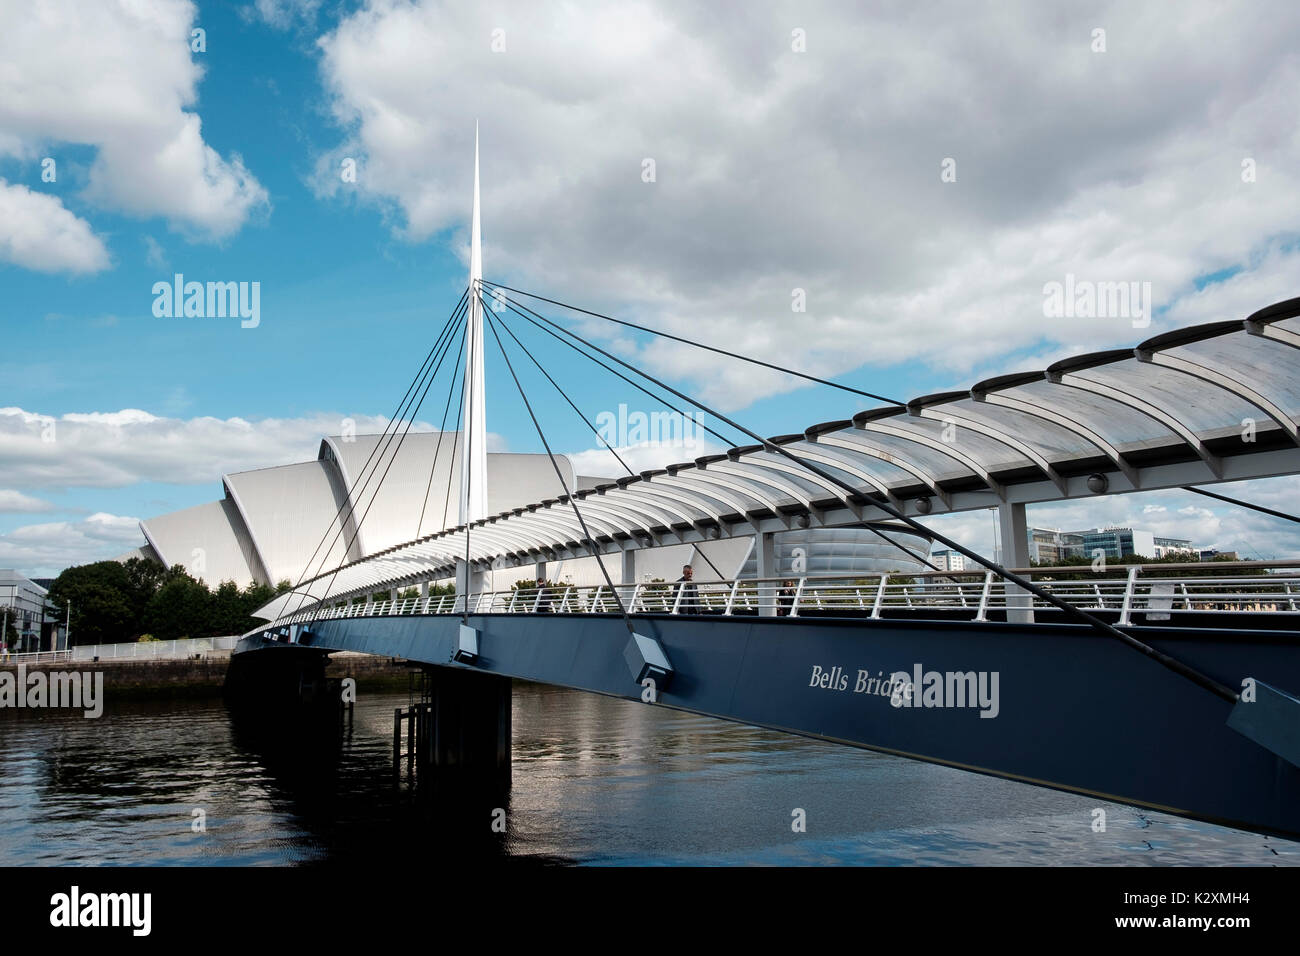 Le développement de l'architecture moderne SEC salle de concert avec Armadillo Bell's pont traversant la rivière Clyde à Glasgow, Ecosse Banque D'Images